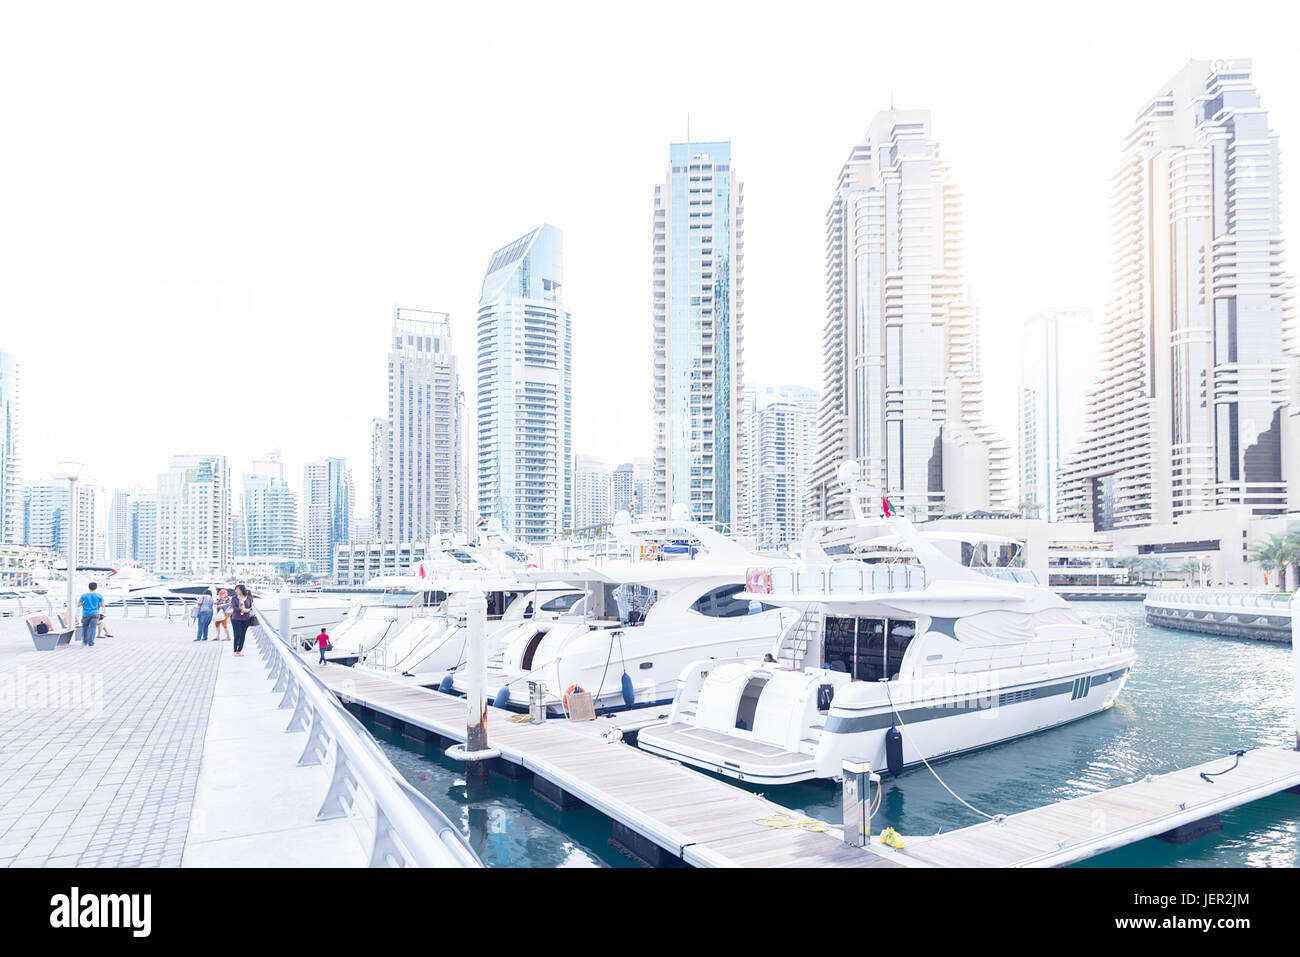 Dubai Marina with boats Stock Photo